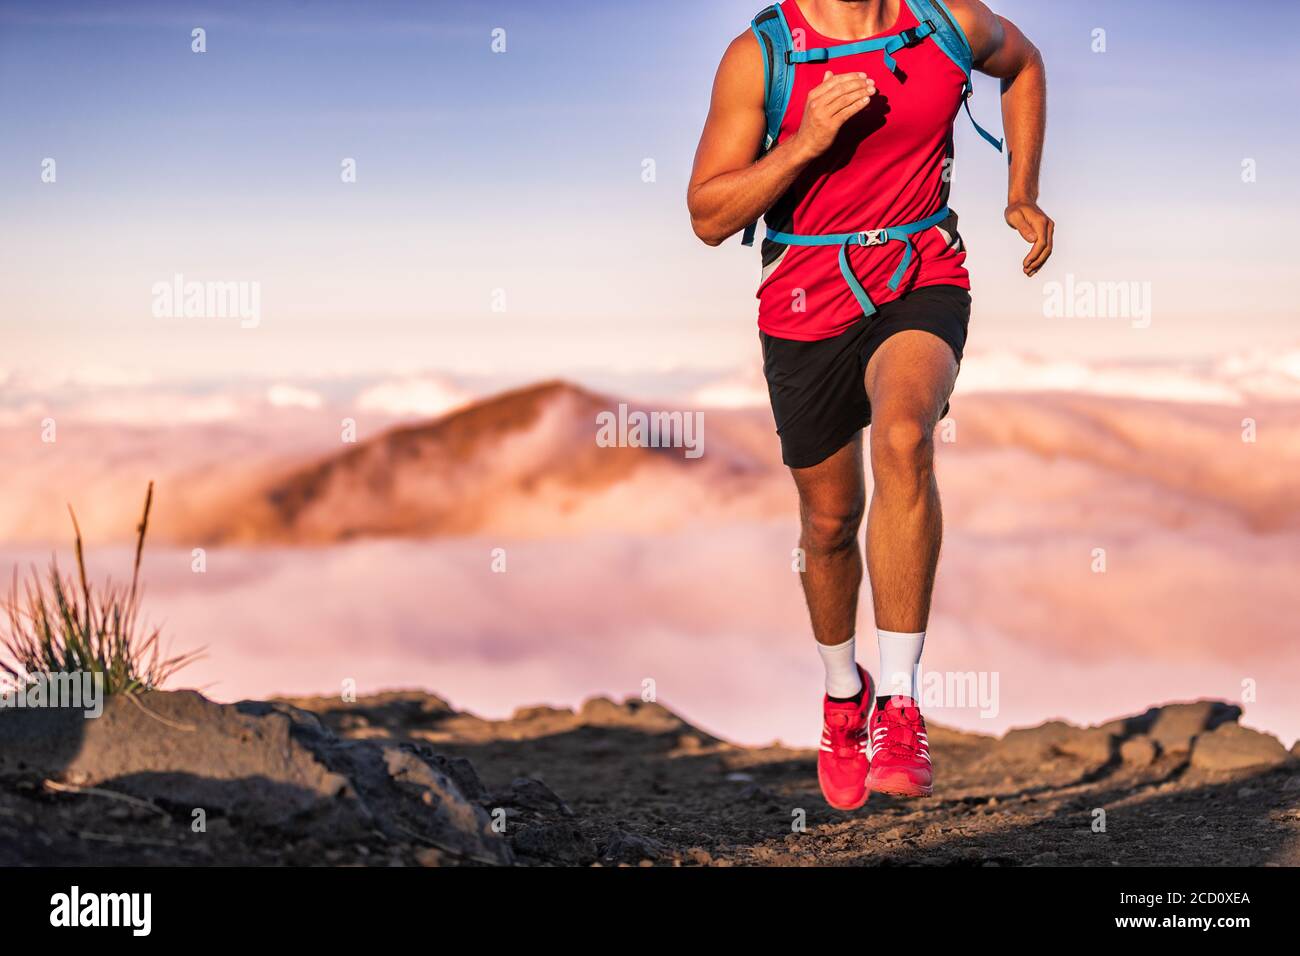 Ultra Running Hombre Atleta Corredor En Trail Run En Montañas De